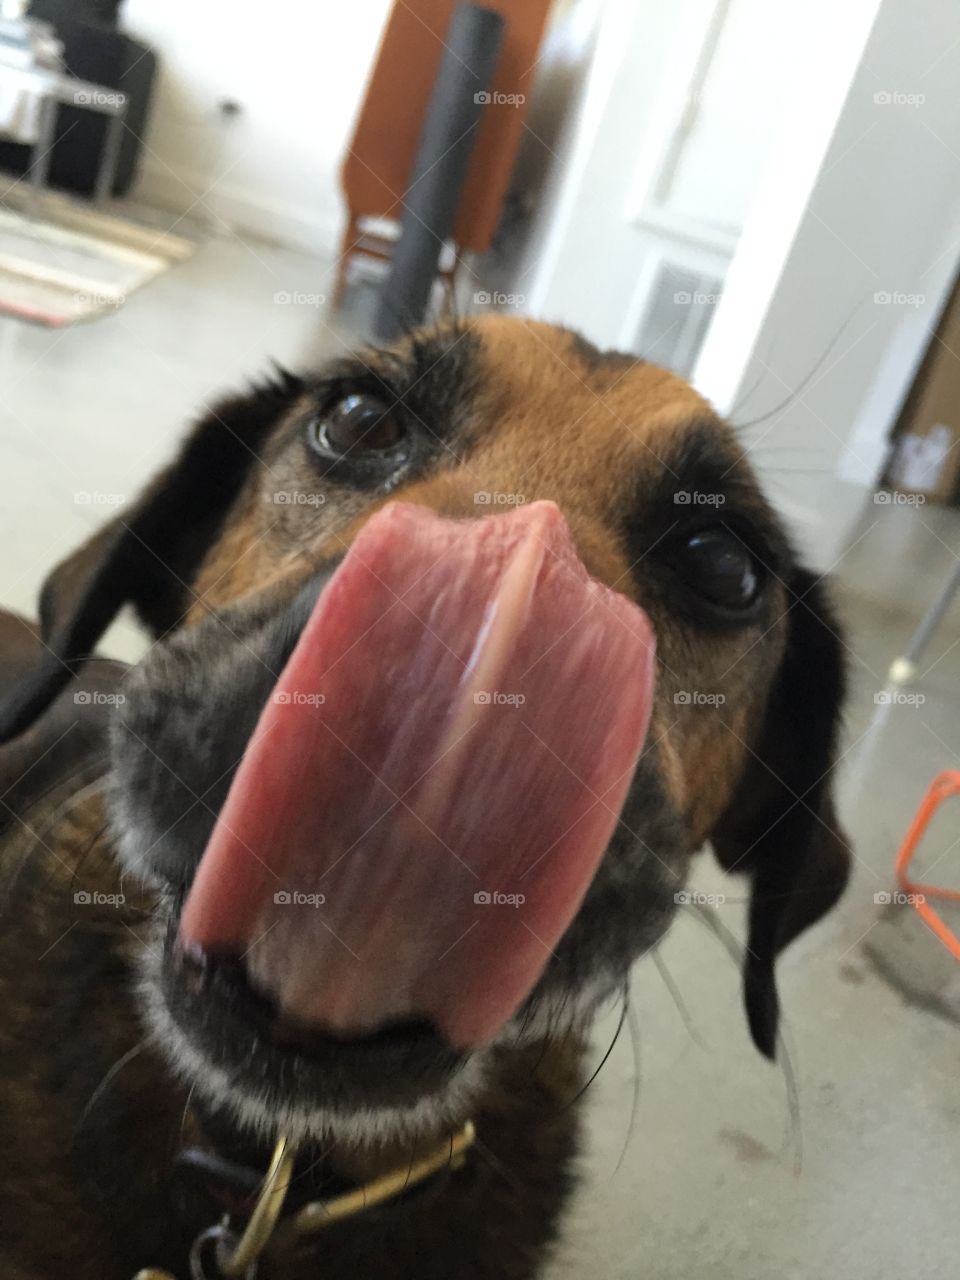 Dog tongue out